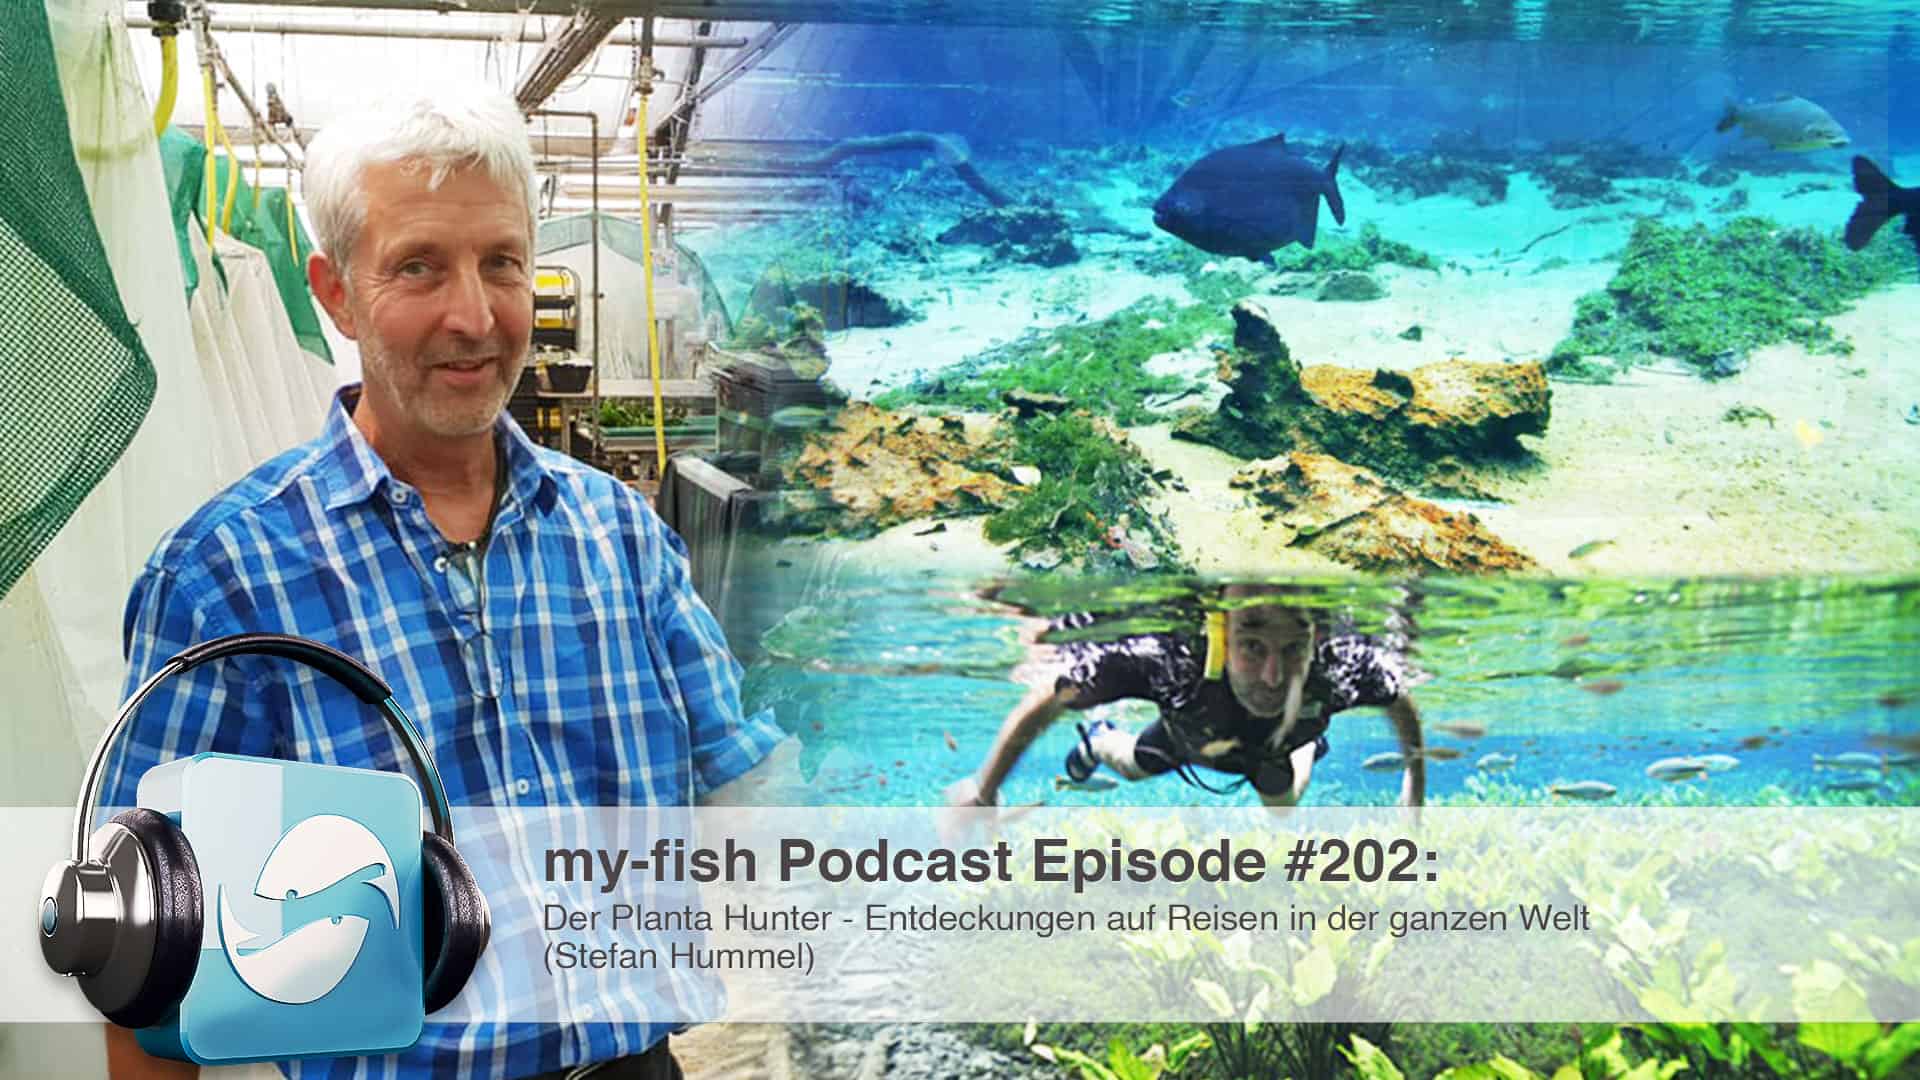 Podcast Episode #202: Der Planta Hunter - Entdeckungen auf Reisen in der ganzen Welt